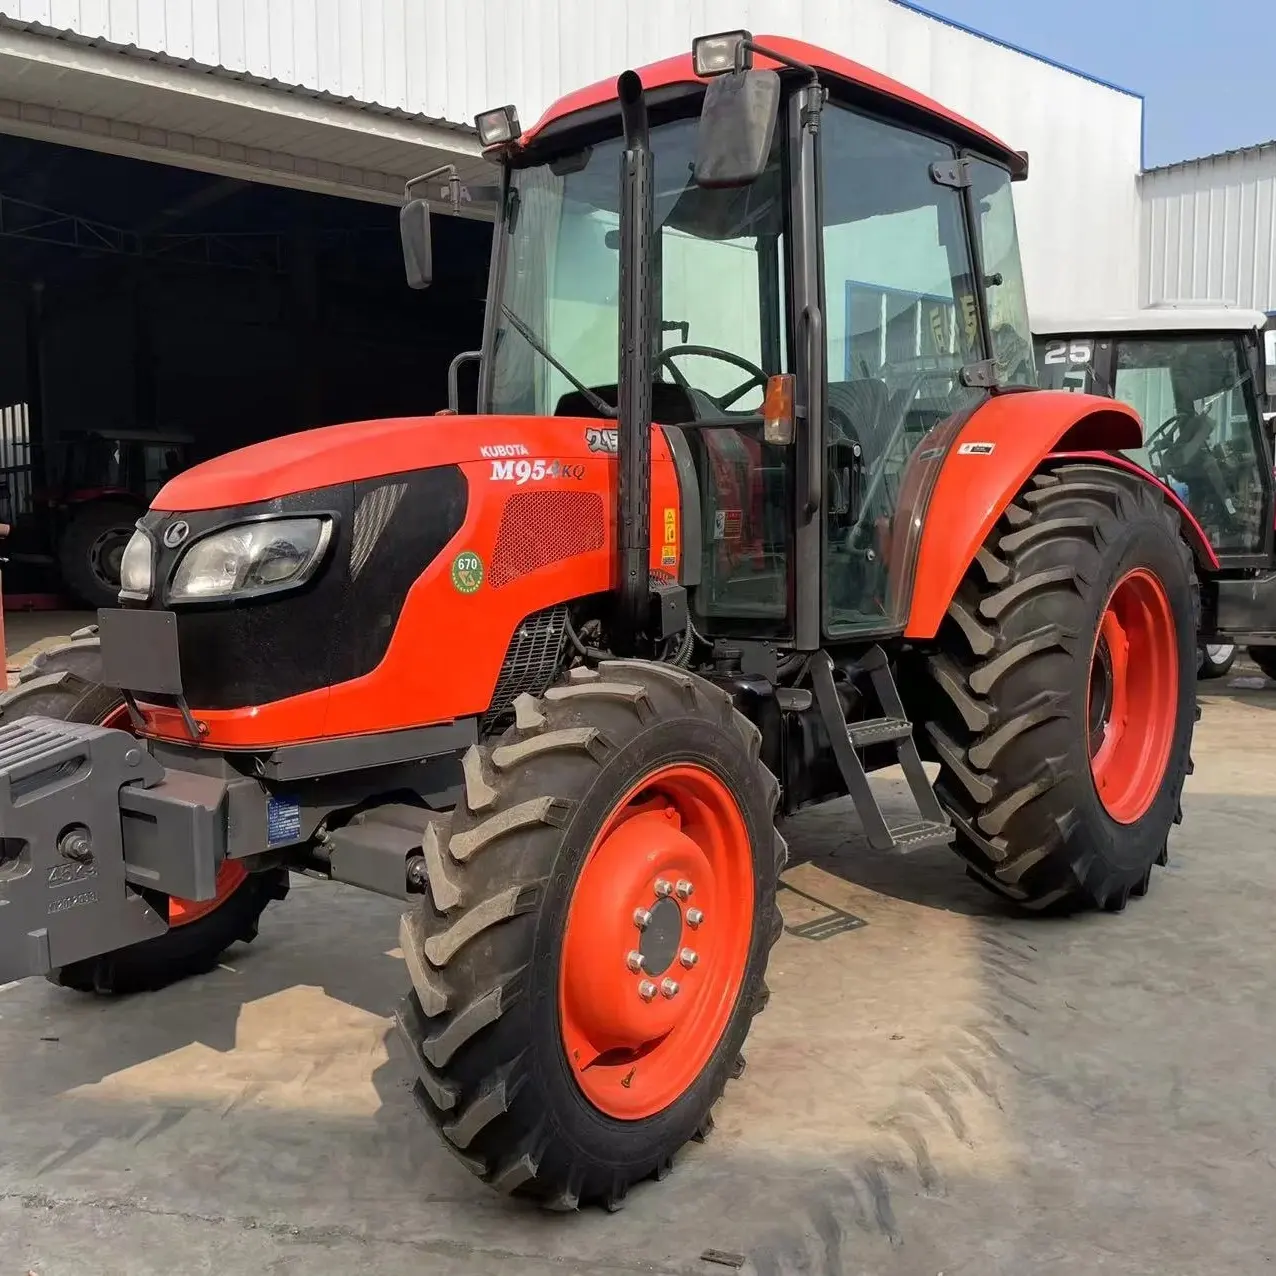 Trator de equipamentos agrícolas usados de alta qualidade, trator agrícola usado 9540 M954KQ 954K 4WD, preço baixo para venda